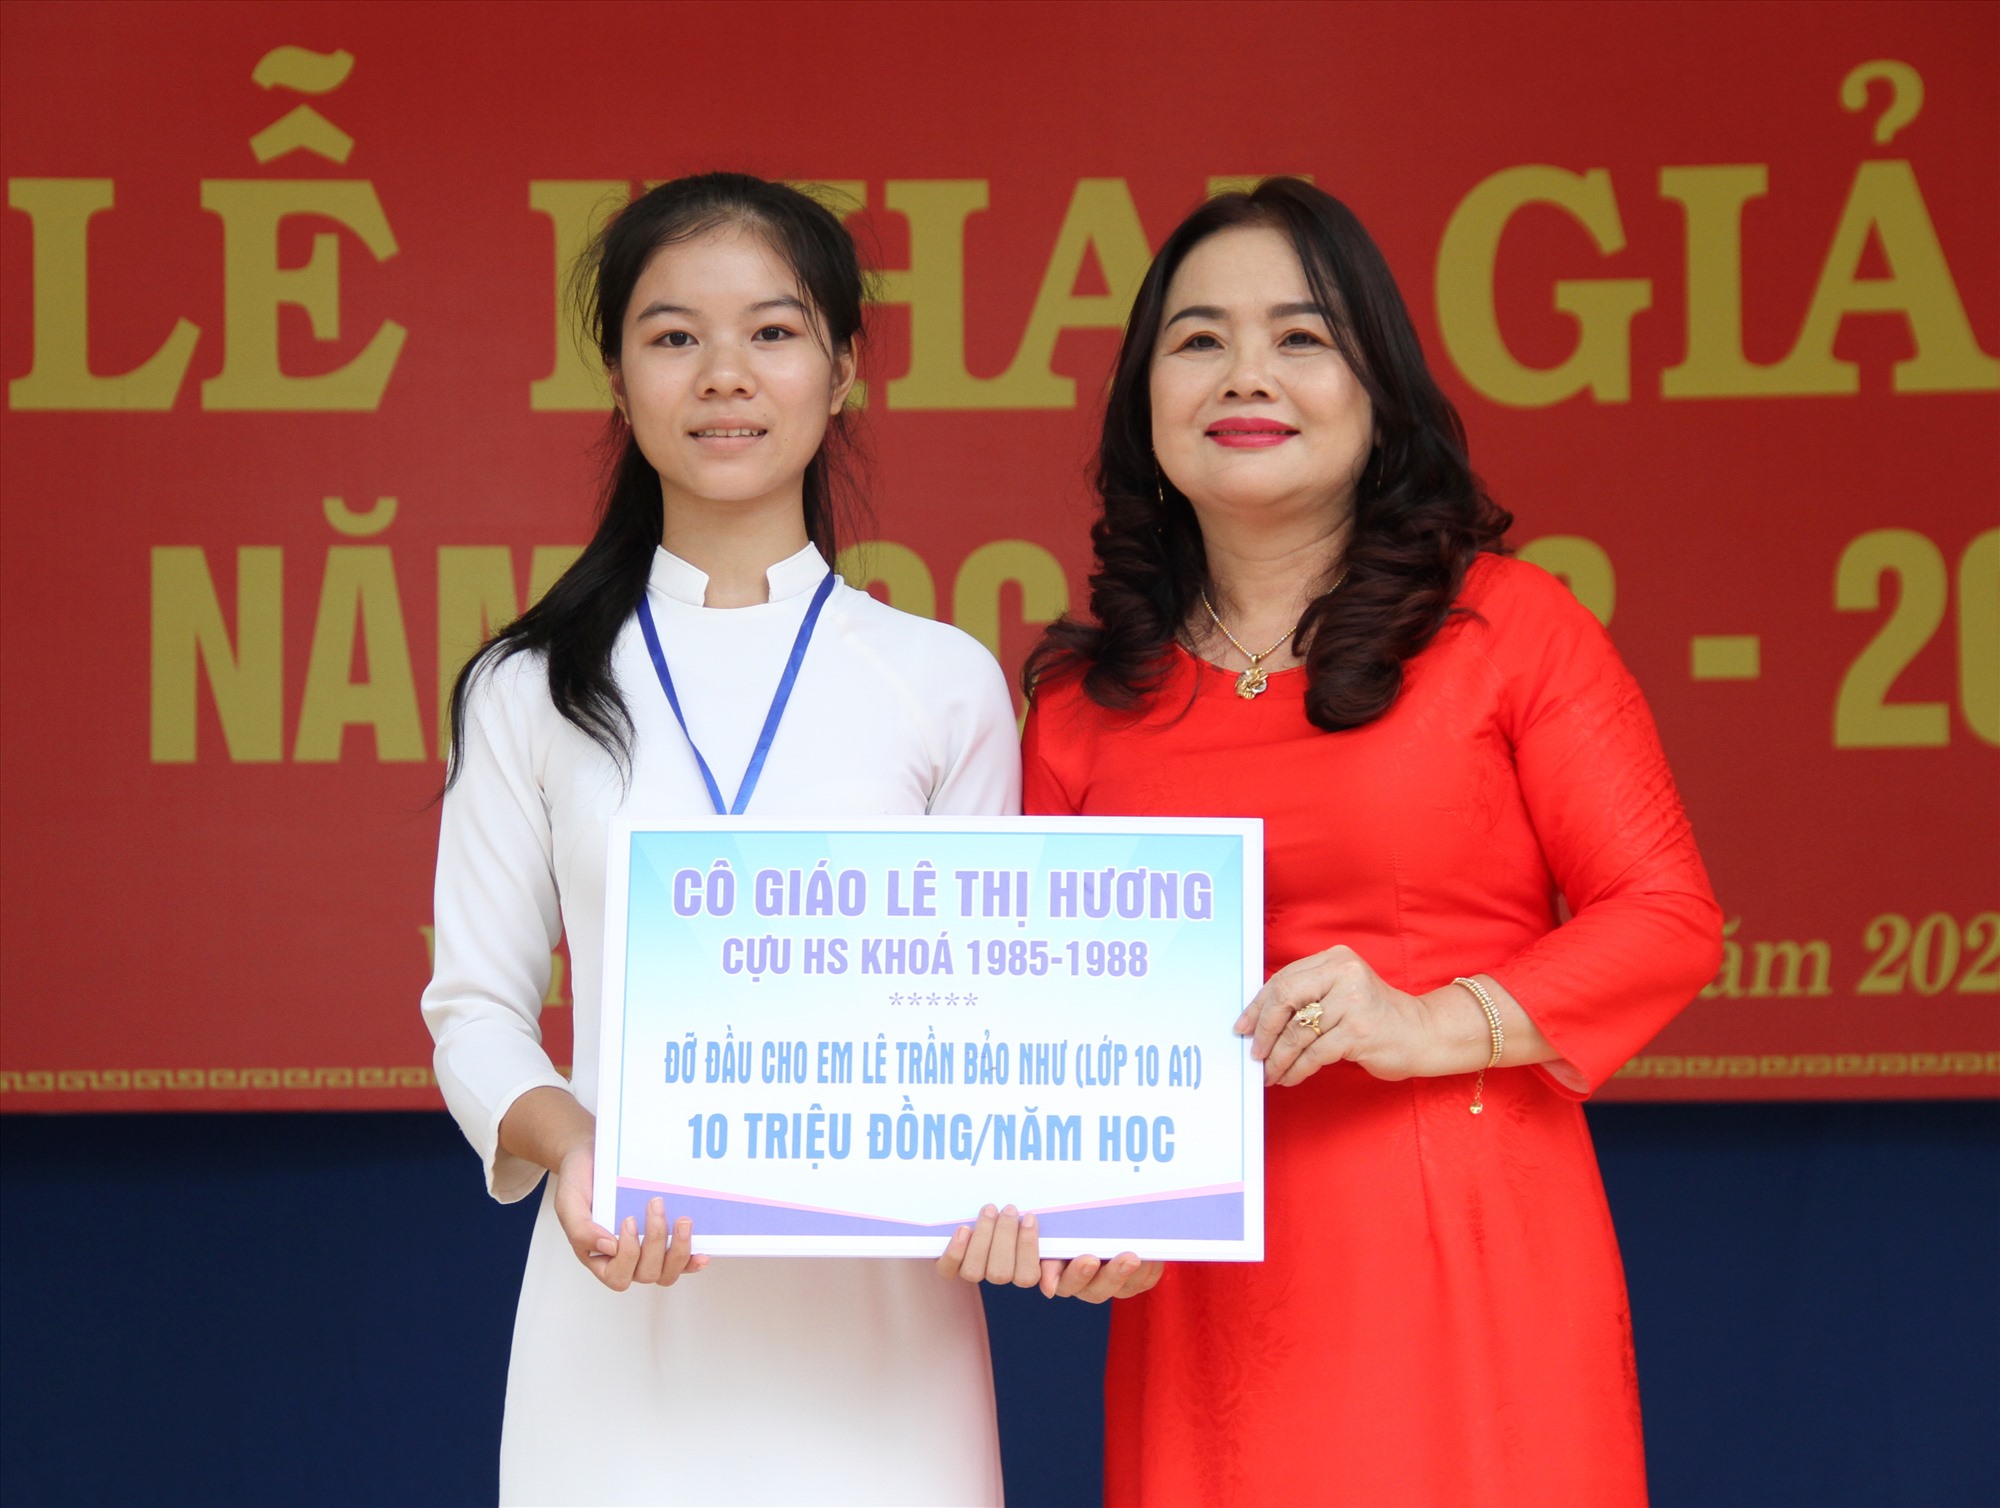 Giám đốc Sở GD&ĐT Lê Thị Hương nhận đỡ đầu cho học sinh Lê Trần Bảo Như, lớp 10 A1, Trường THPT Vĩnh Linh - Ảnh: MĐ